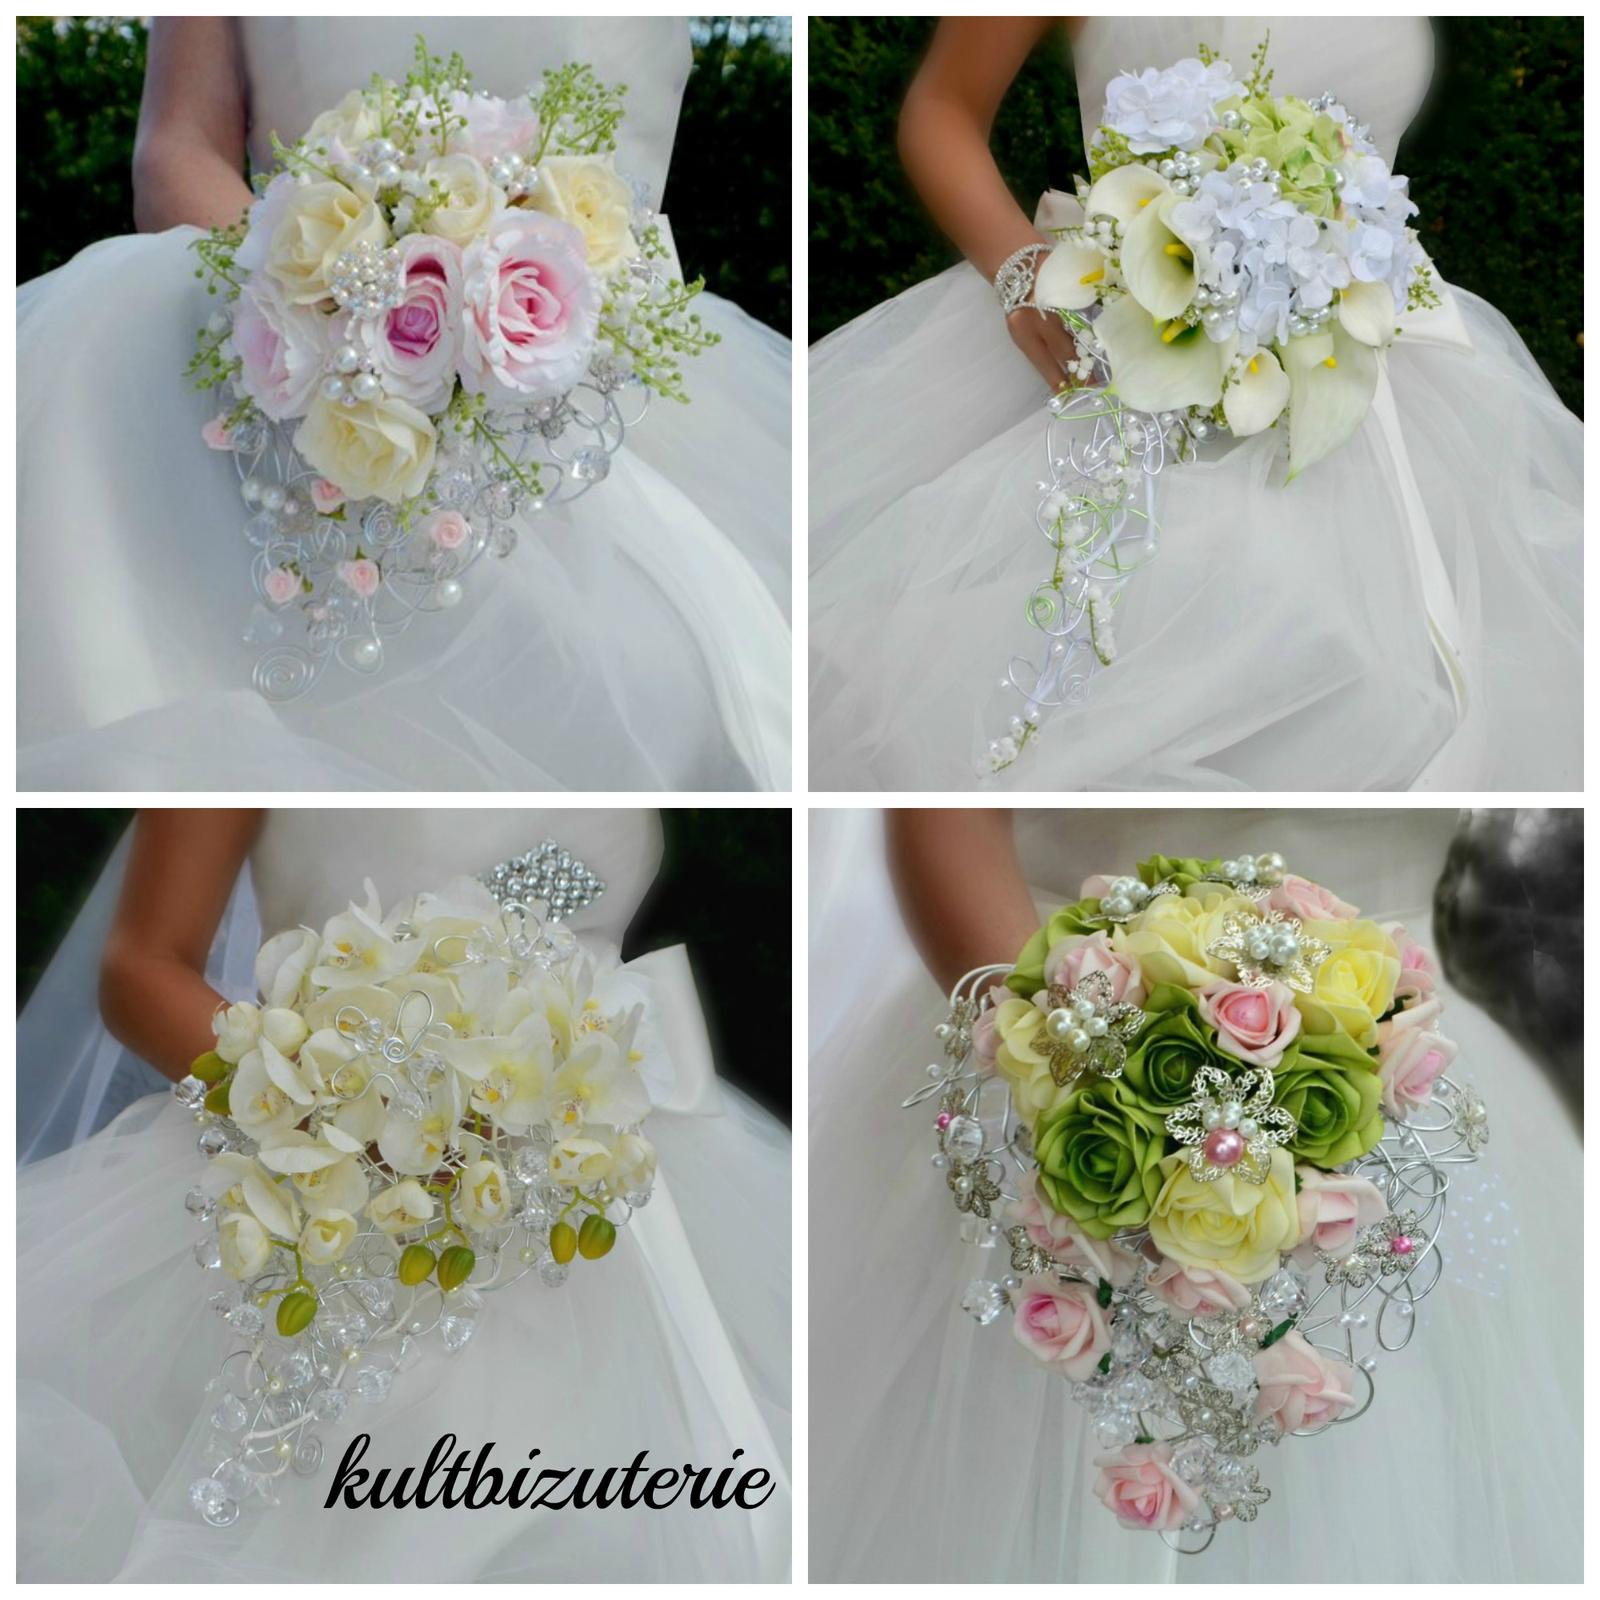 Svatební převislé kytice - Svatební převislé kytice v jemné klasické barevnosti , vhodné k šatům s jednodušší sukní.... objednávat můžete zde http://www.fler.cz/zbozi?ucat=187754 .‪#‎svatebnikytice‬ ‪#‎kytice‬ ‪#‎svatba‬ ‪#‎satenovakytice‬ #svatba ‪#‎kultbizuterie‬ ‪#‎svatebni